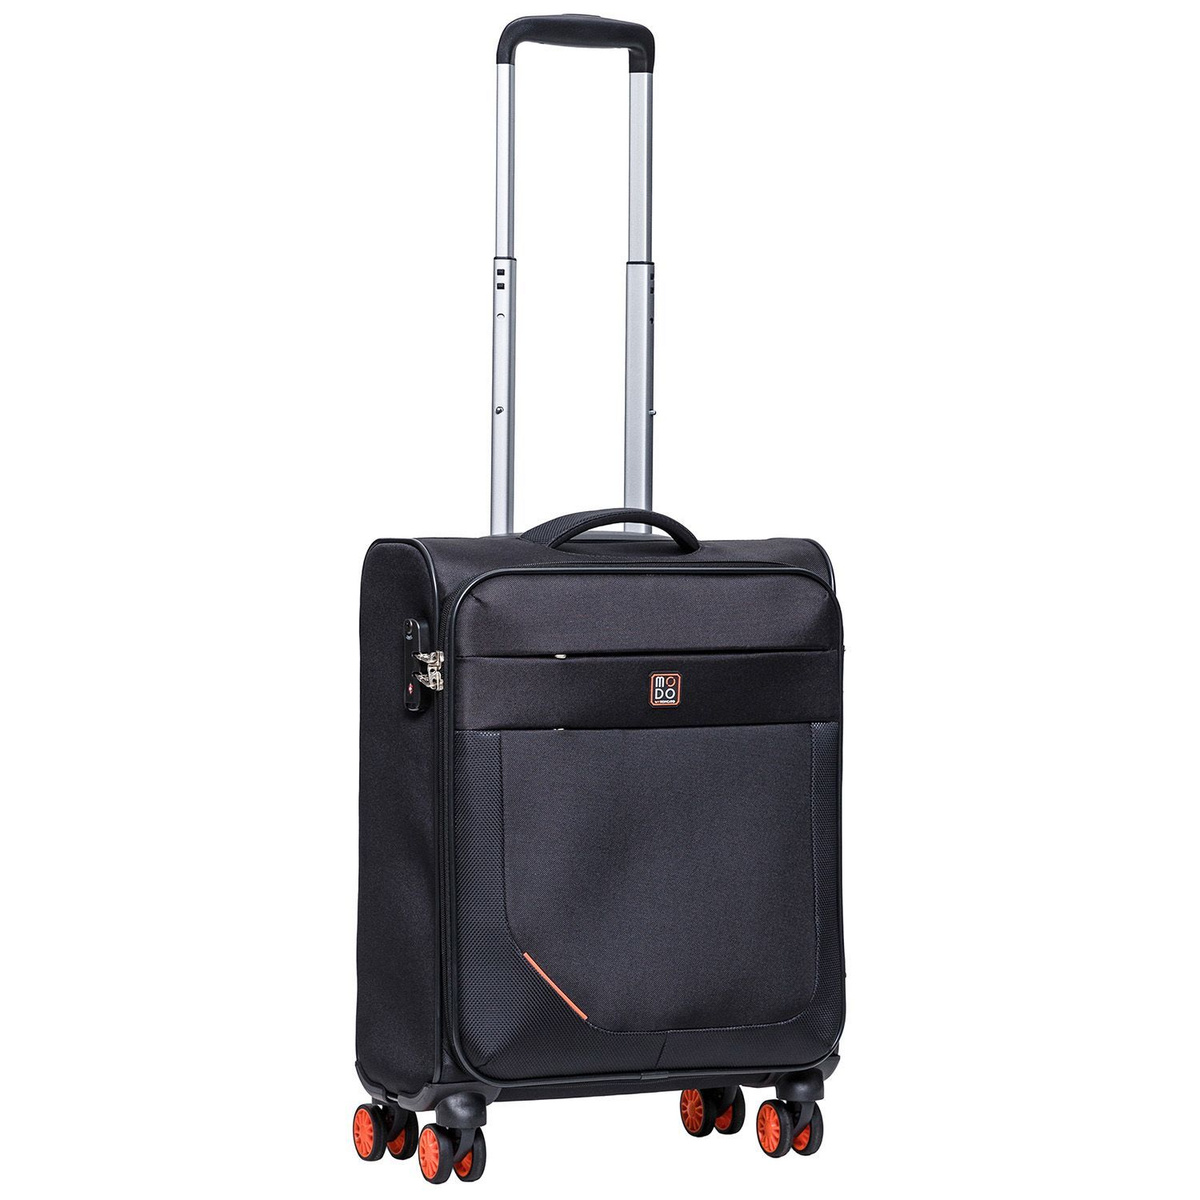 Размер чемодана: 40x55x20 см Вес чемодана: 2,7 кг Объём чемодана: 42 л